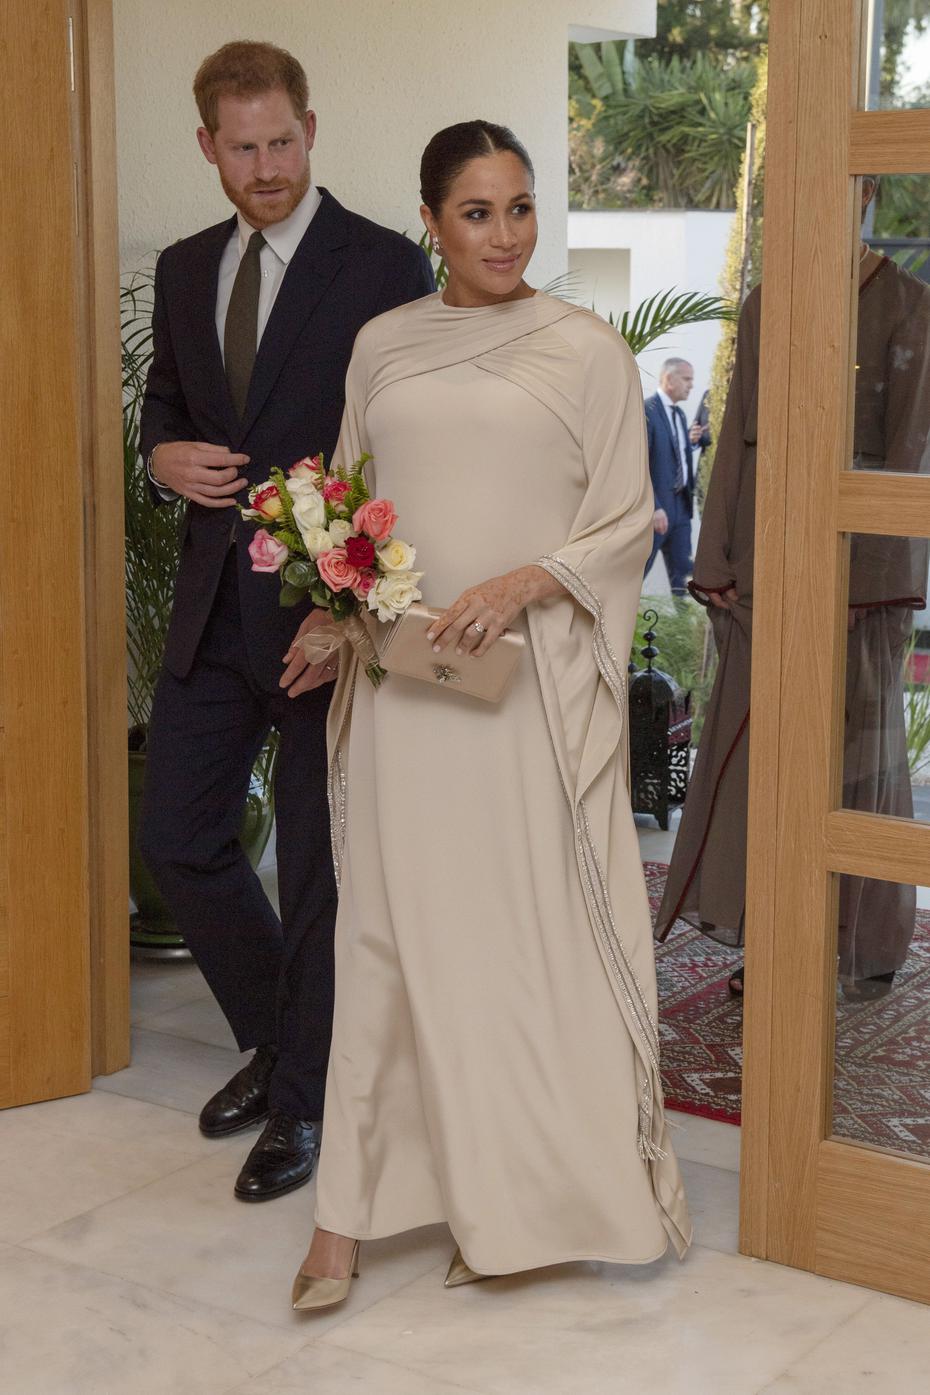 En febrero, durante la visita a Marruecos, la duquesa seleccionó un vestido largo, tipo caftán, de la casa de moda Dior, para asistir a la recepción del embajador británico en la ciudad de Rabat. (Archivo)